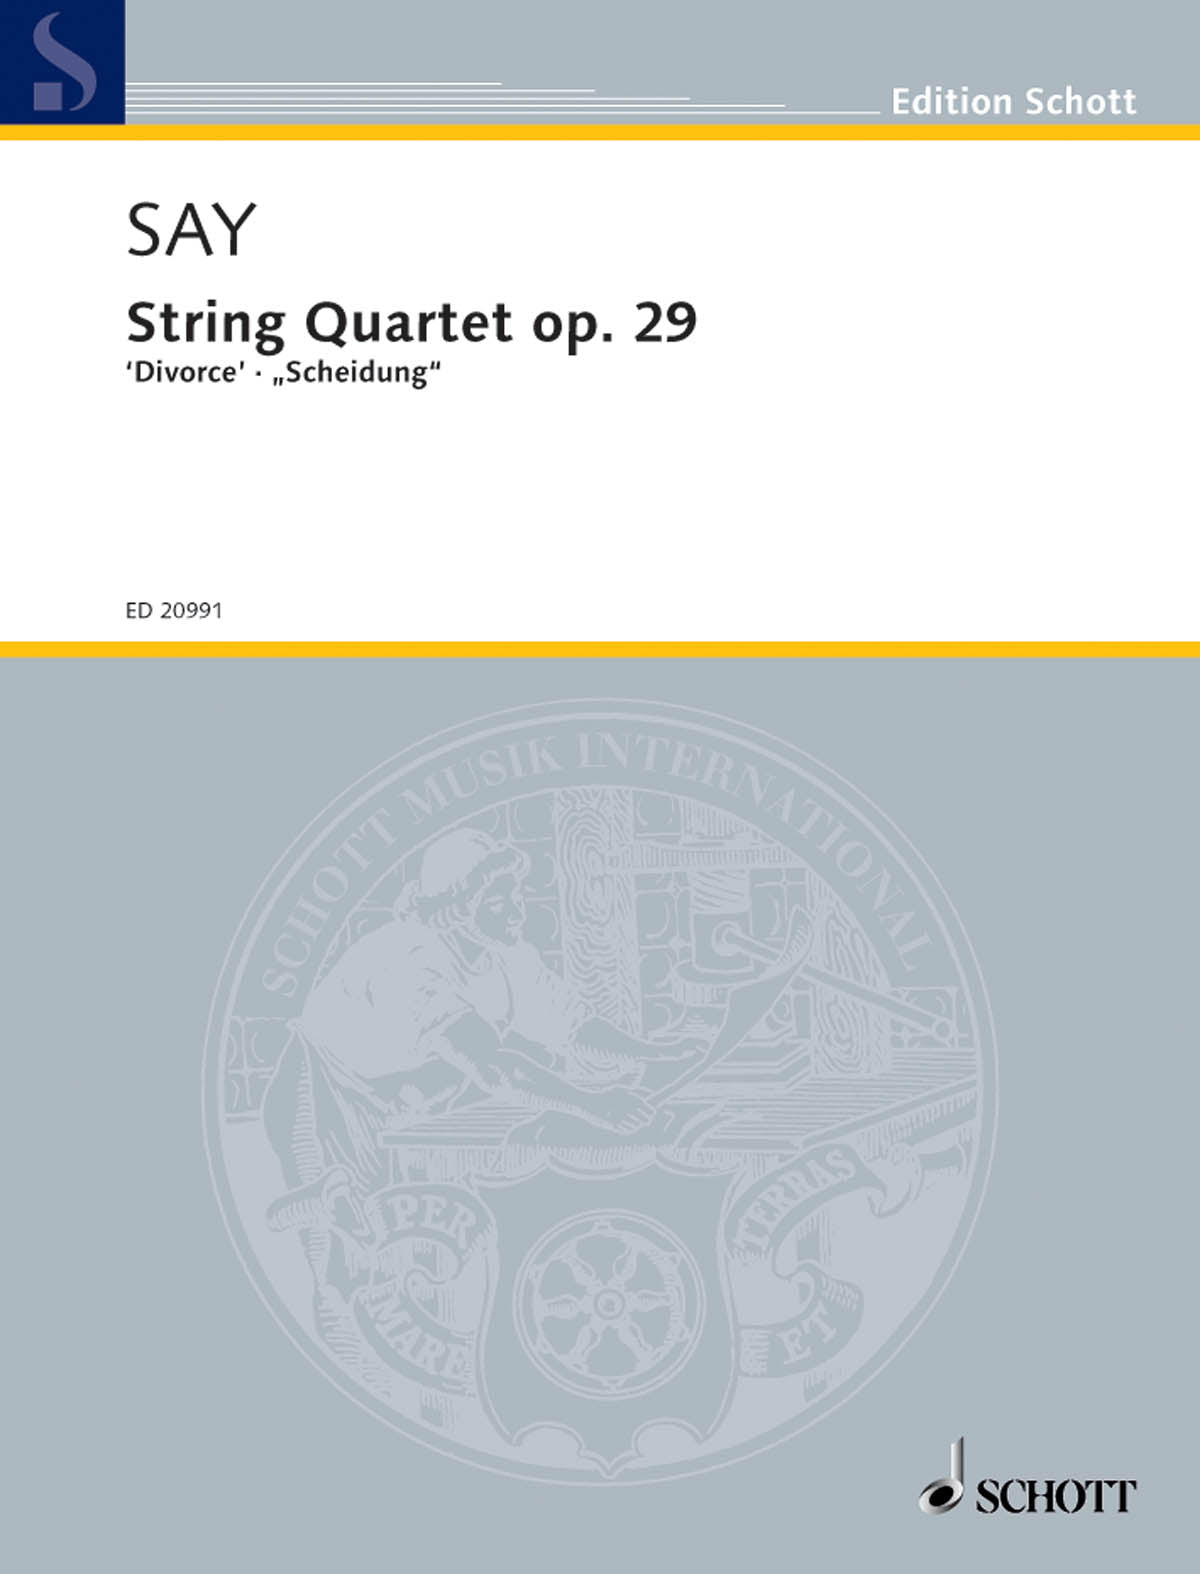 Say: String Quartet, Op. 29 ("Divorce")